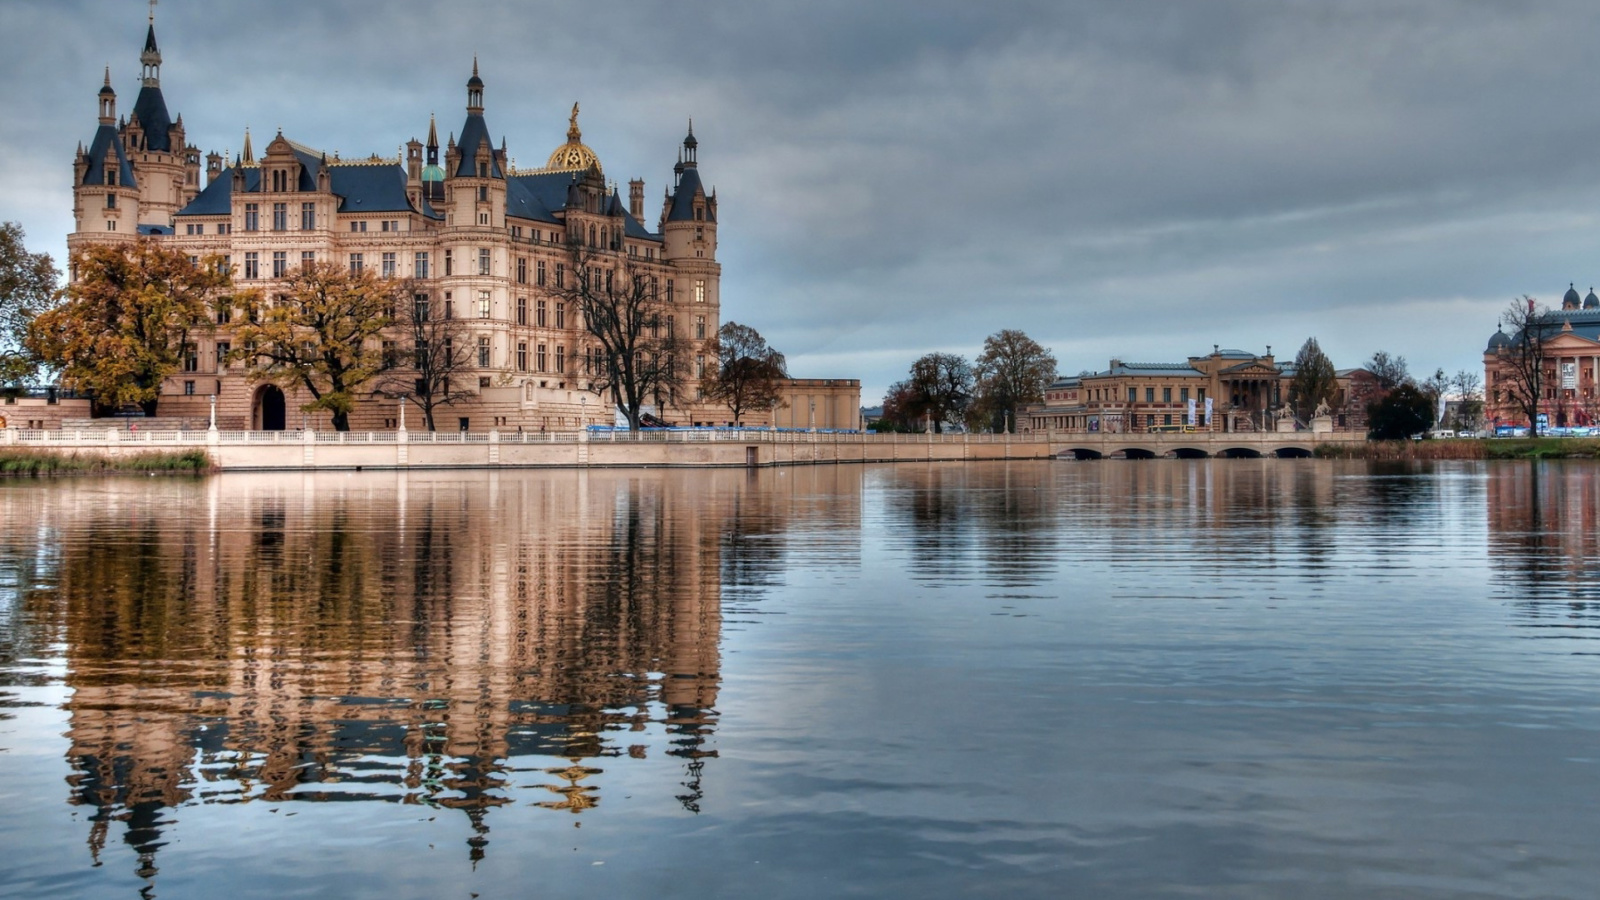 Schwerin Castle in Germany, Mecklenburg Vorpommern screenshot #1 1600x900